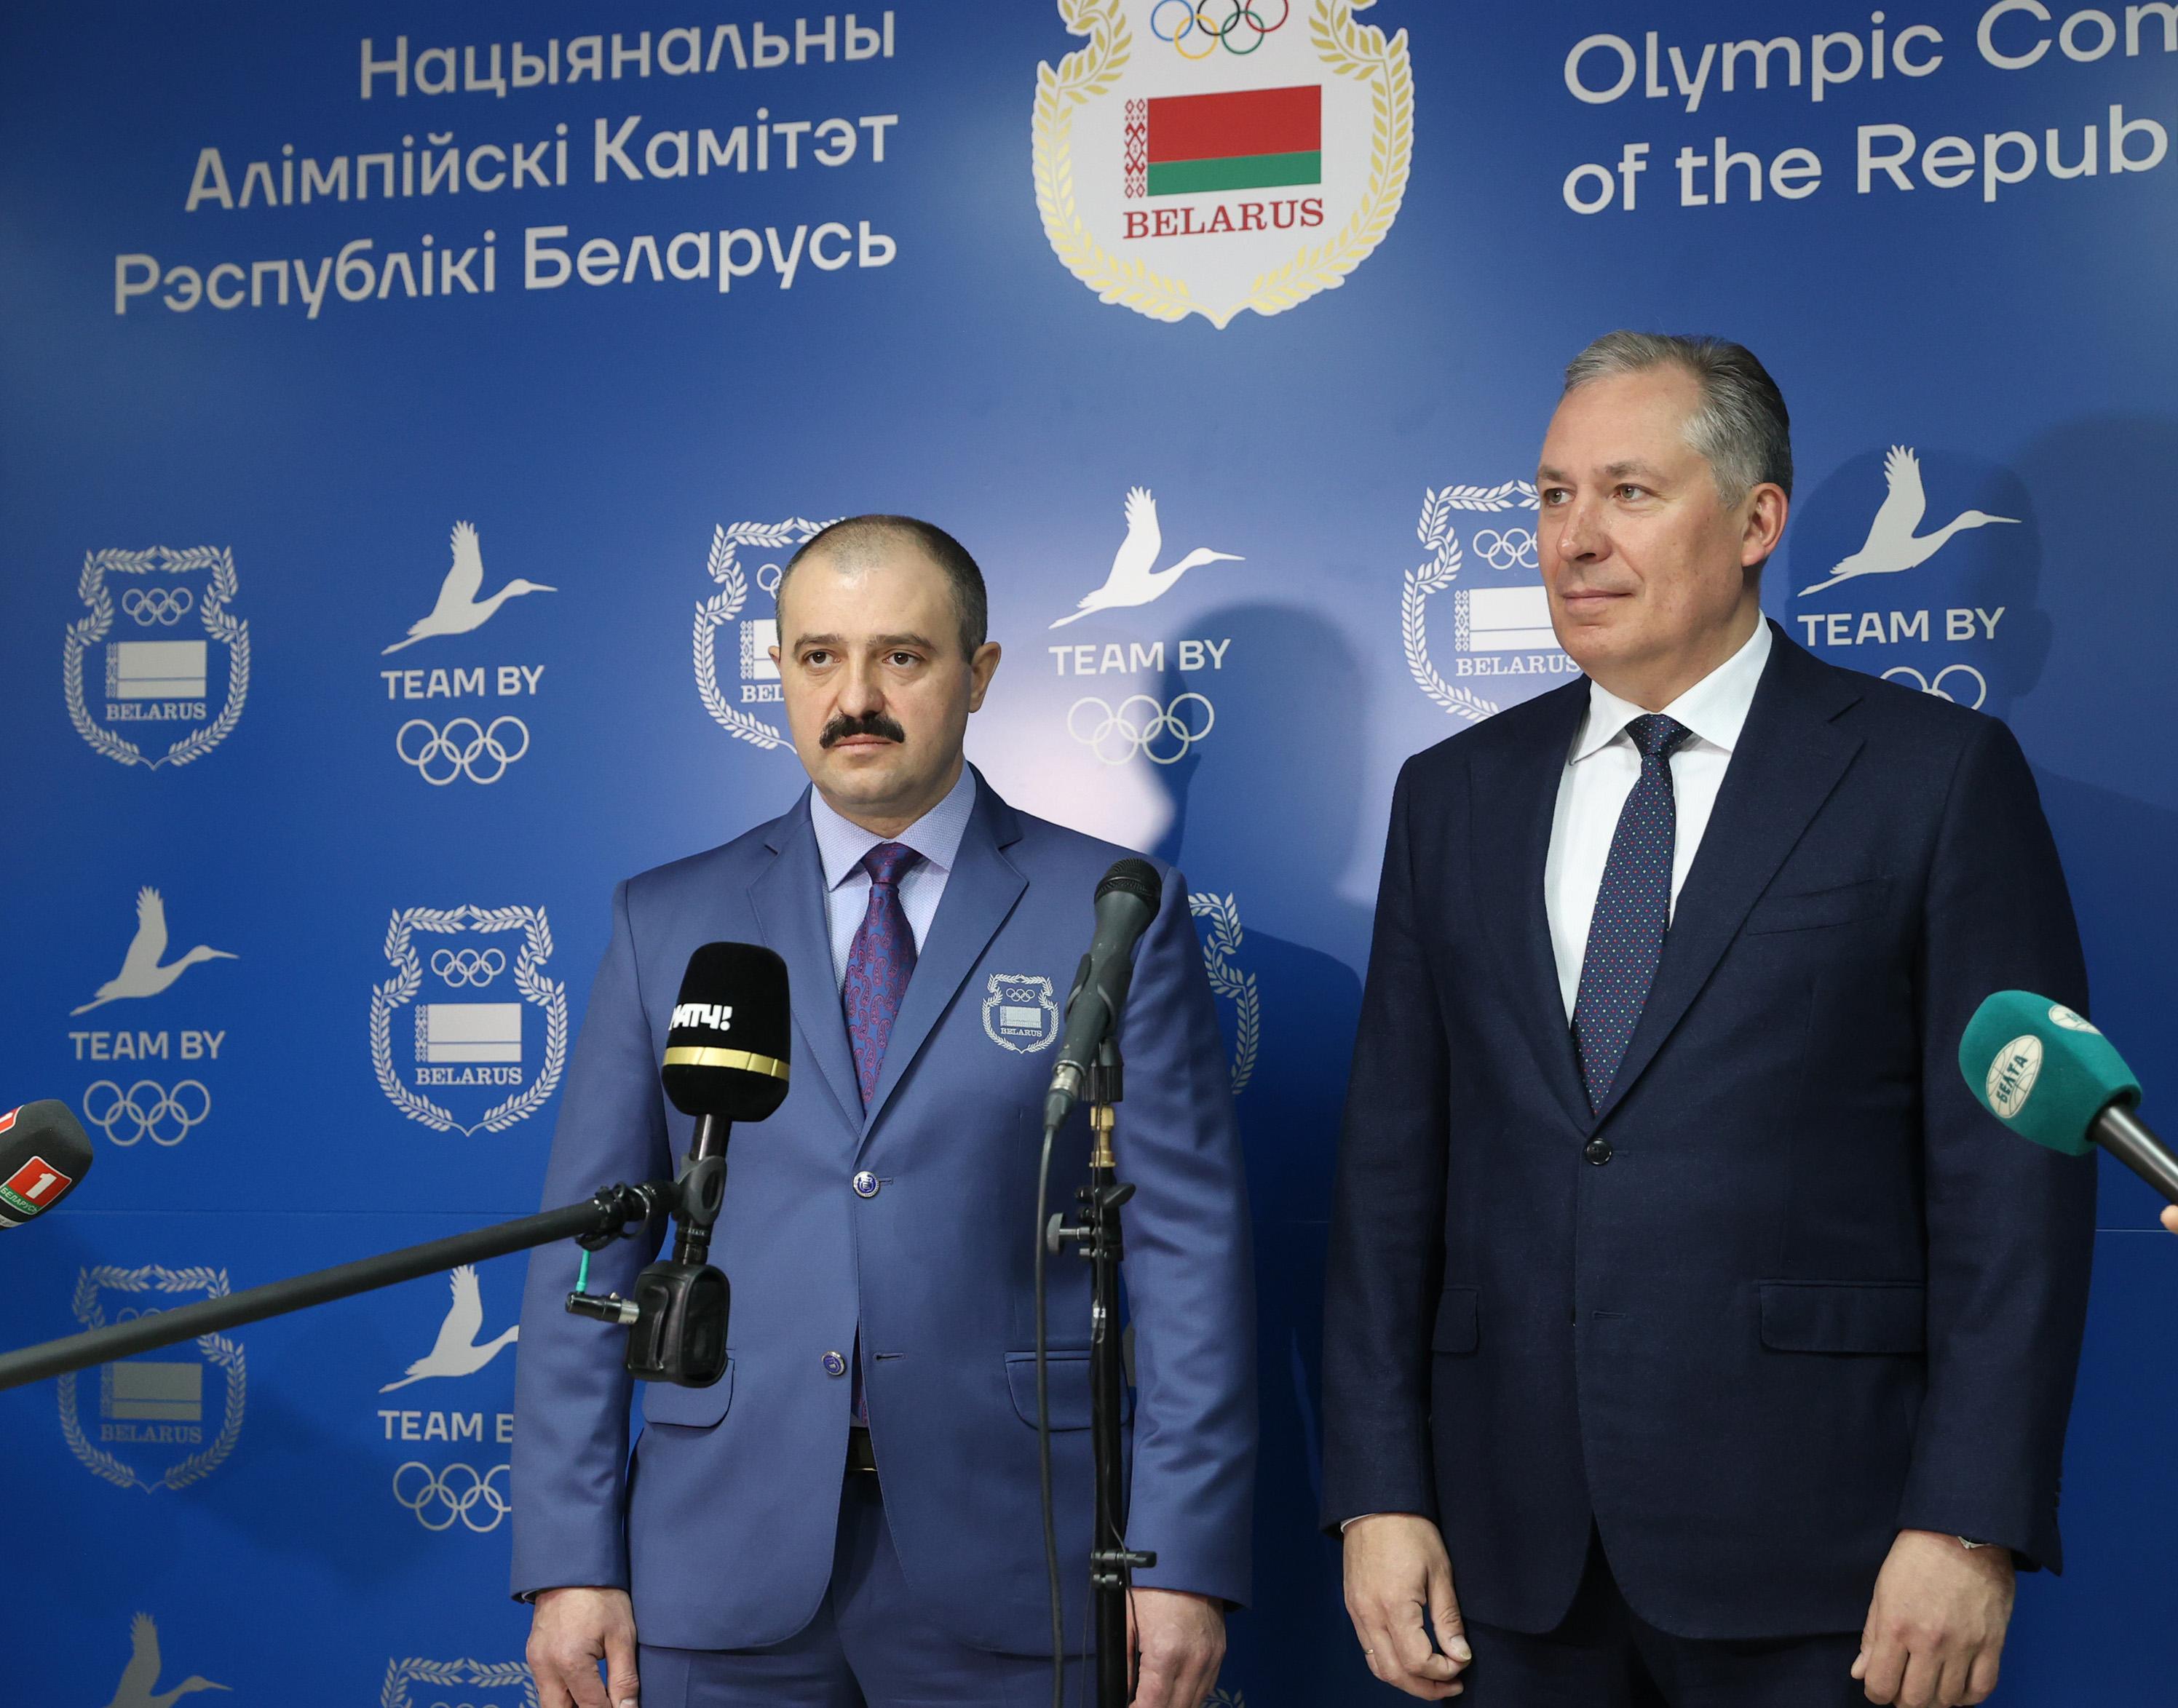 Станислав Поздняков отметил, что встречи комиссий спортсменов России и Беларуси стали традицией